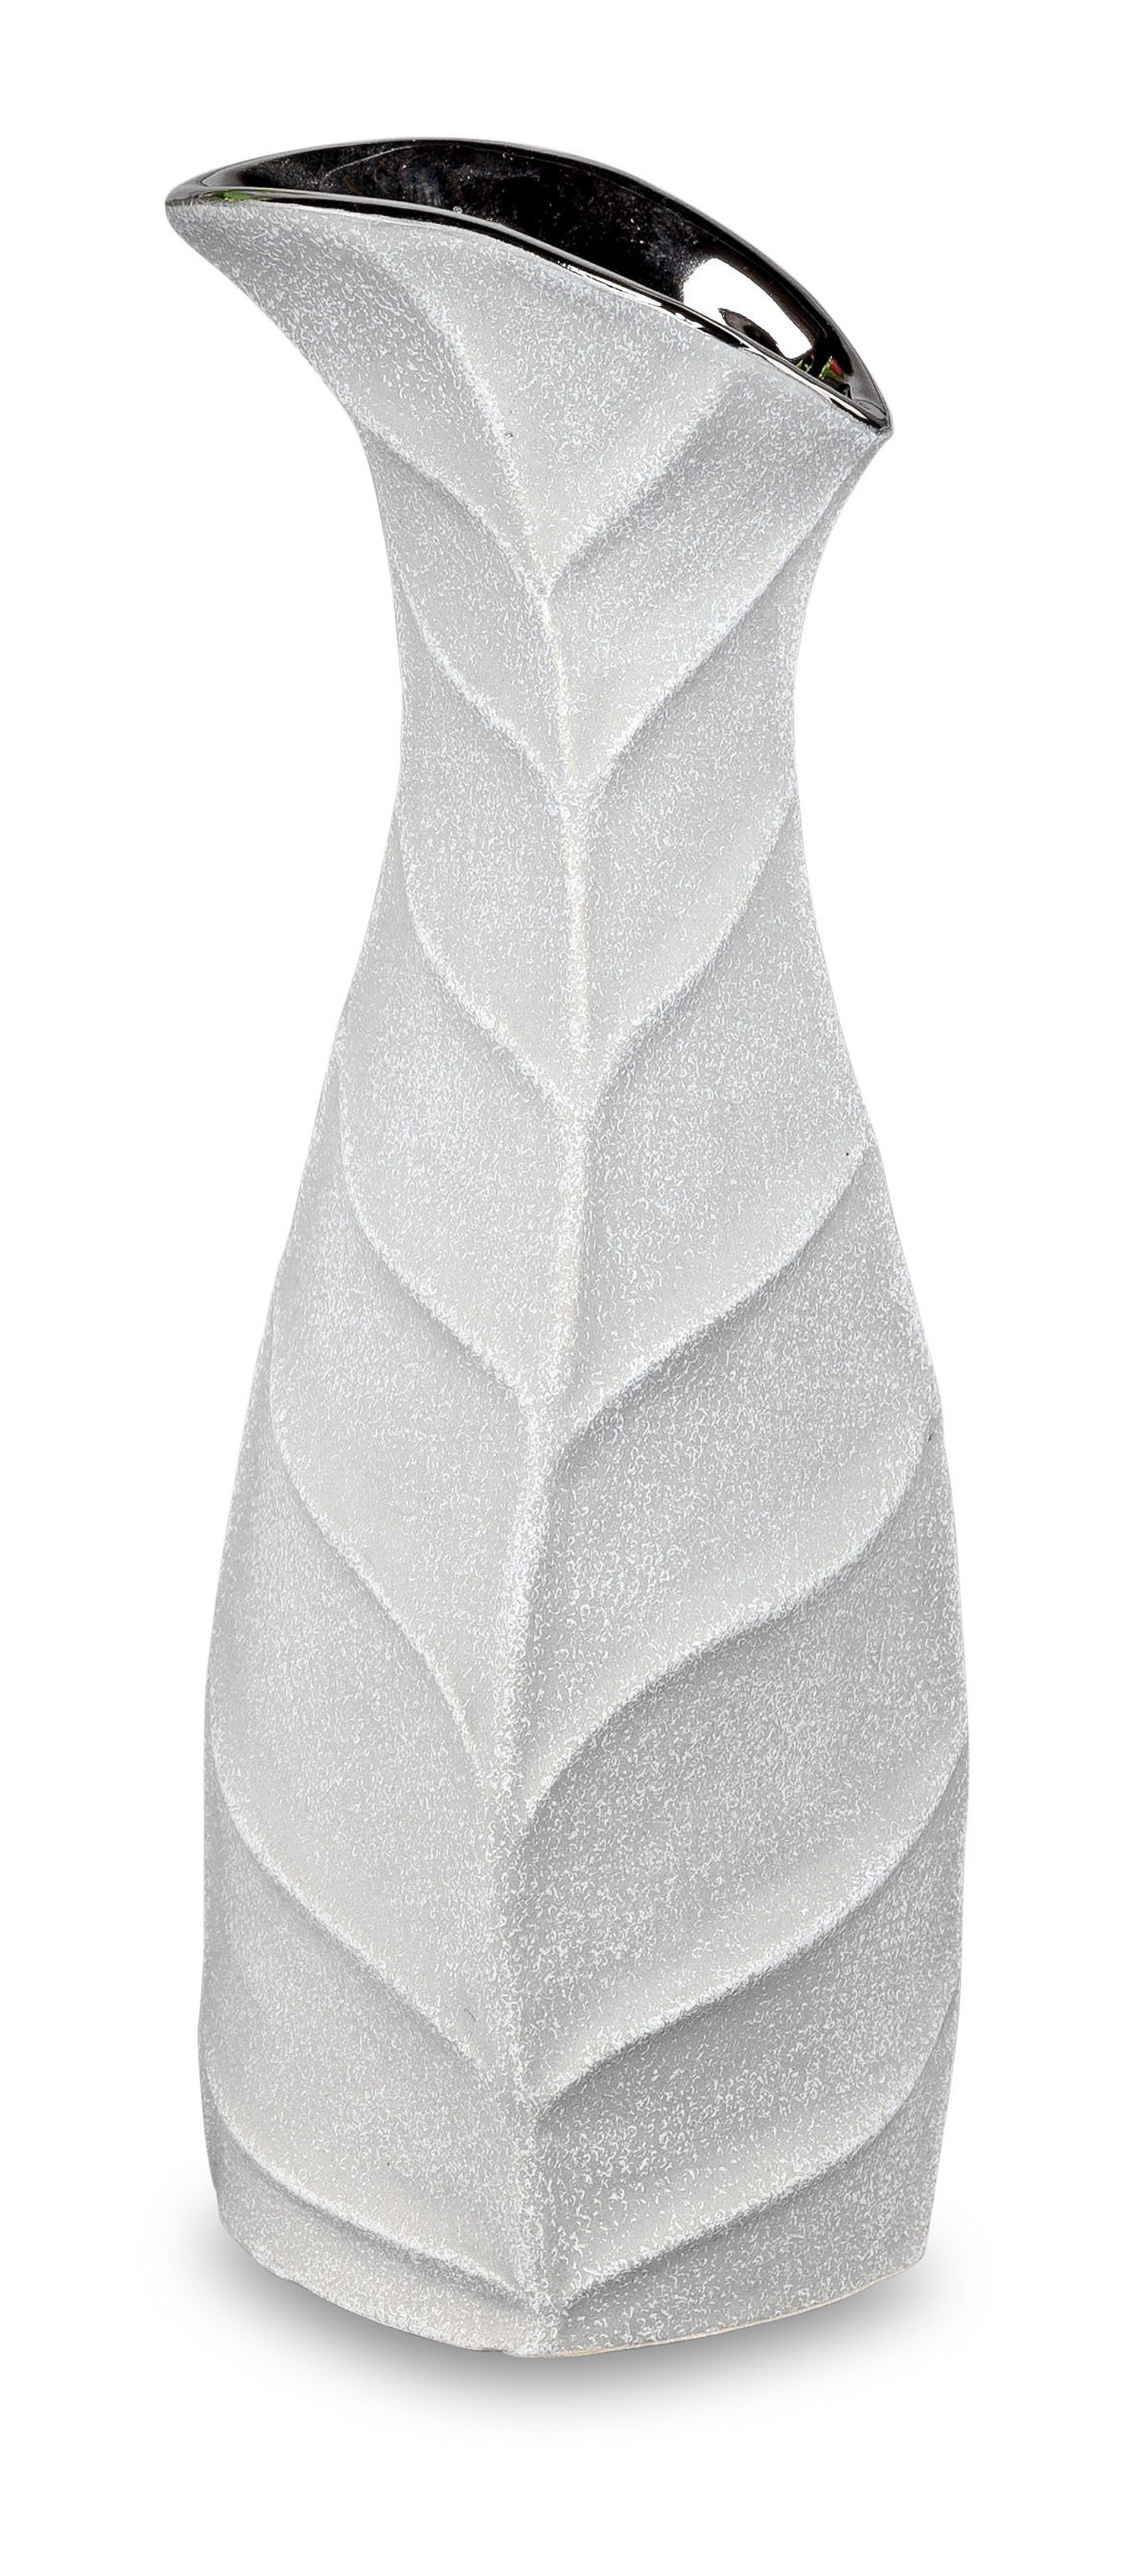 Steindesign Vase in und silber im Öffnung Small-Preis Formano Dekovase Tischvase